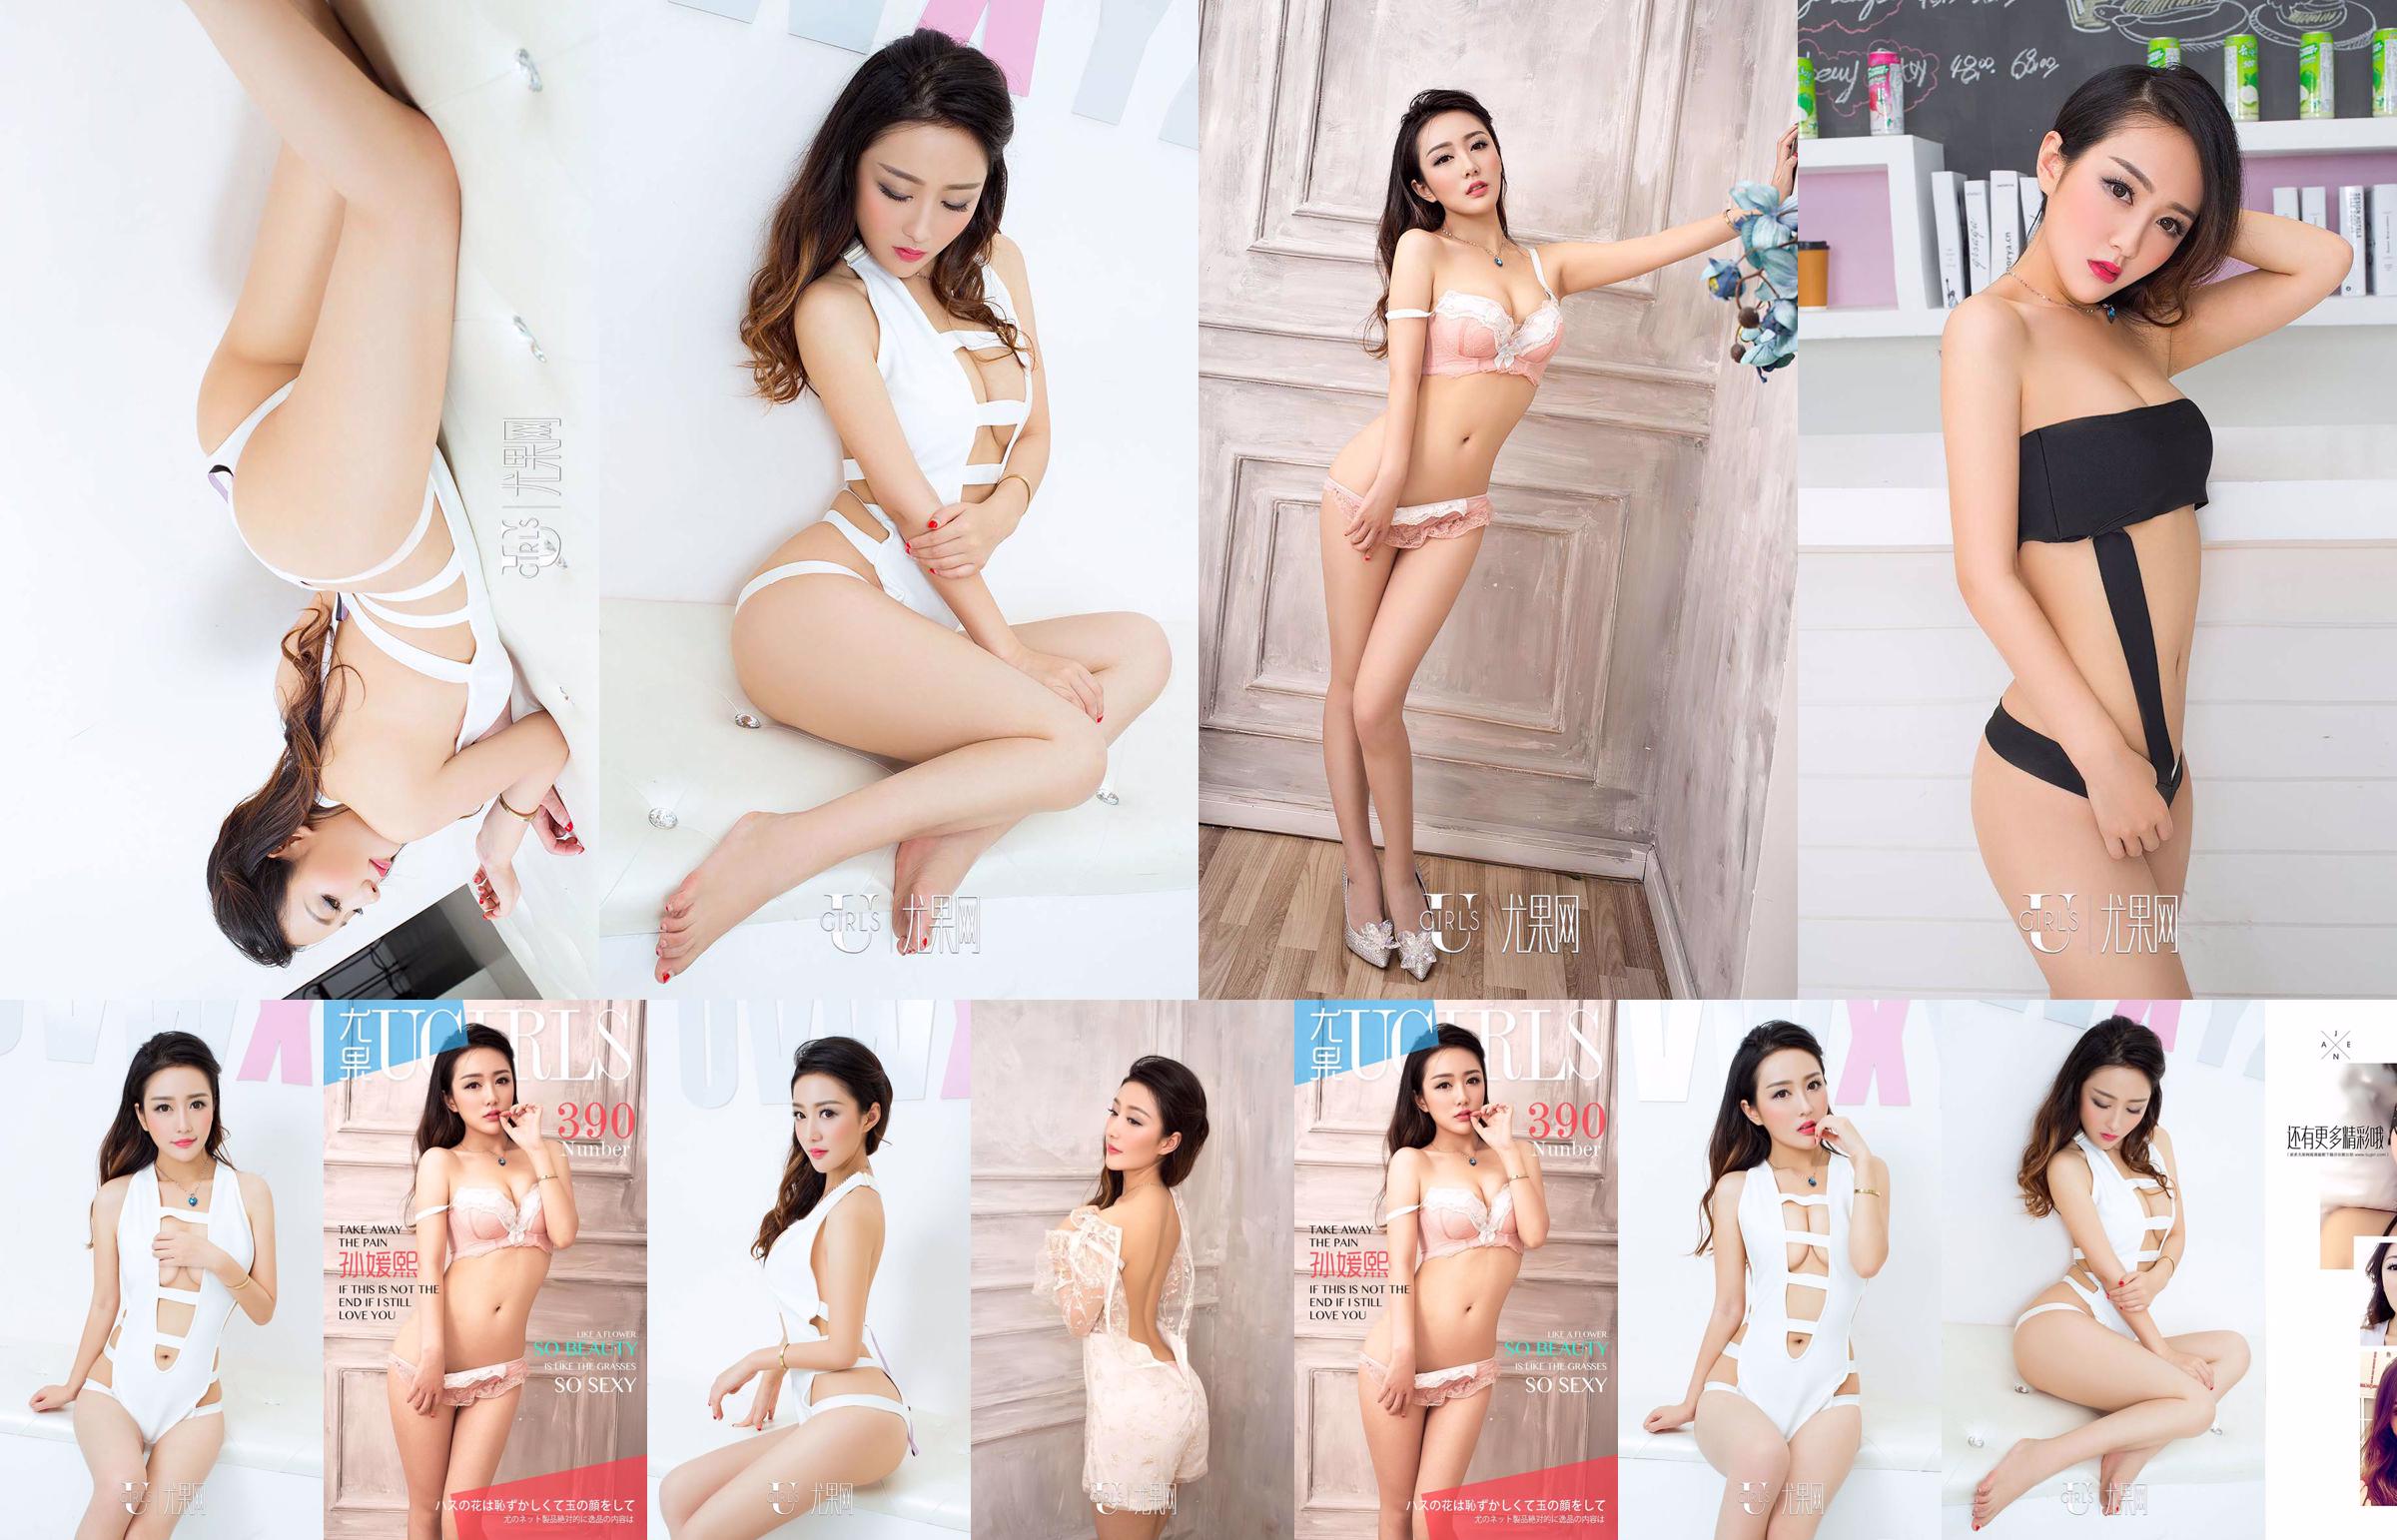 Sun Yuanxi "tão bela tão sexy" [爱 优 物 Ugirls] No.390 No.1a24e8 Página 20